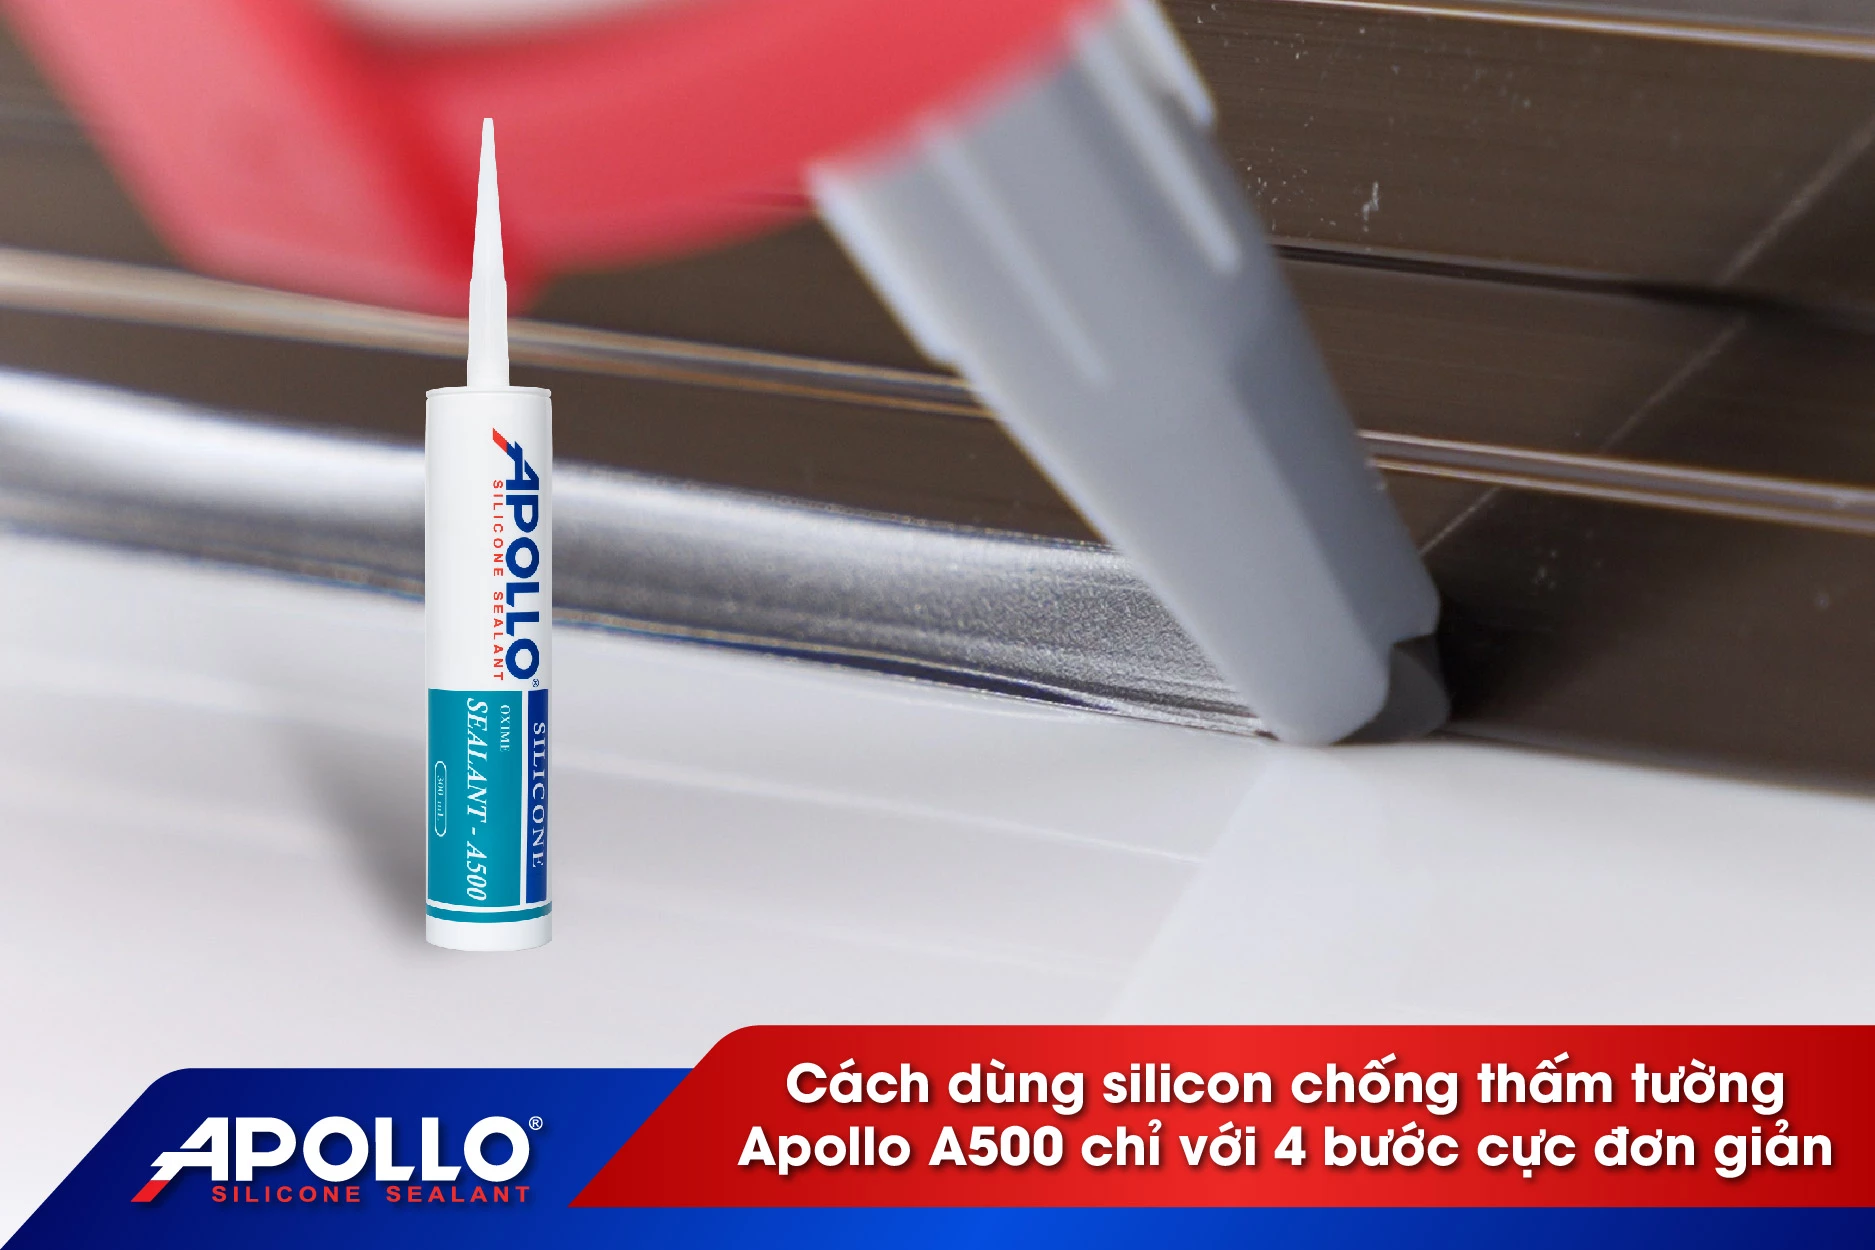 Cách dùng silicone chống thấm tường Apollo A500 chỉ với 4 bước cực đơn giản